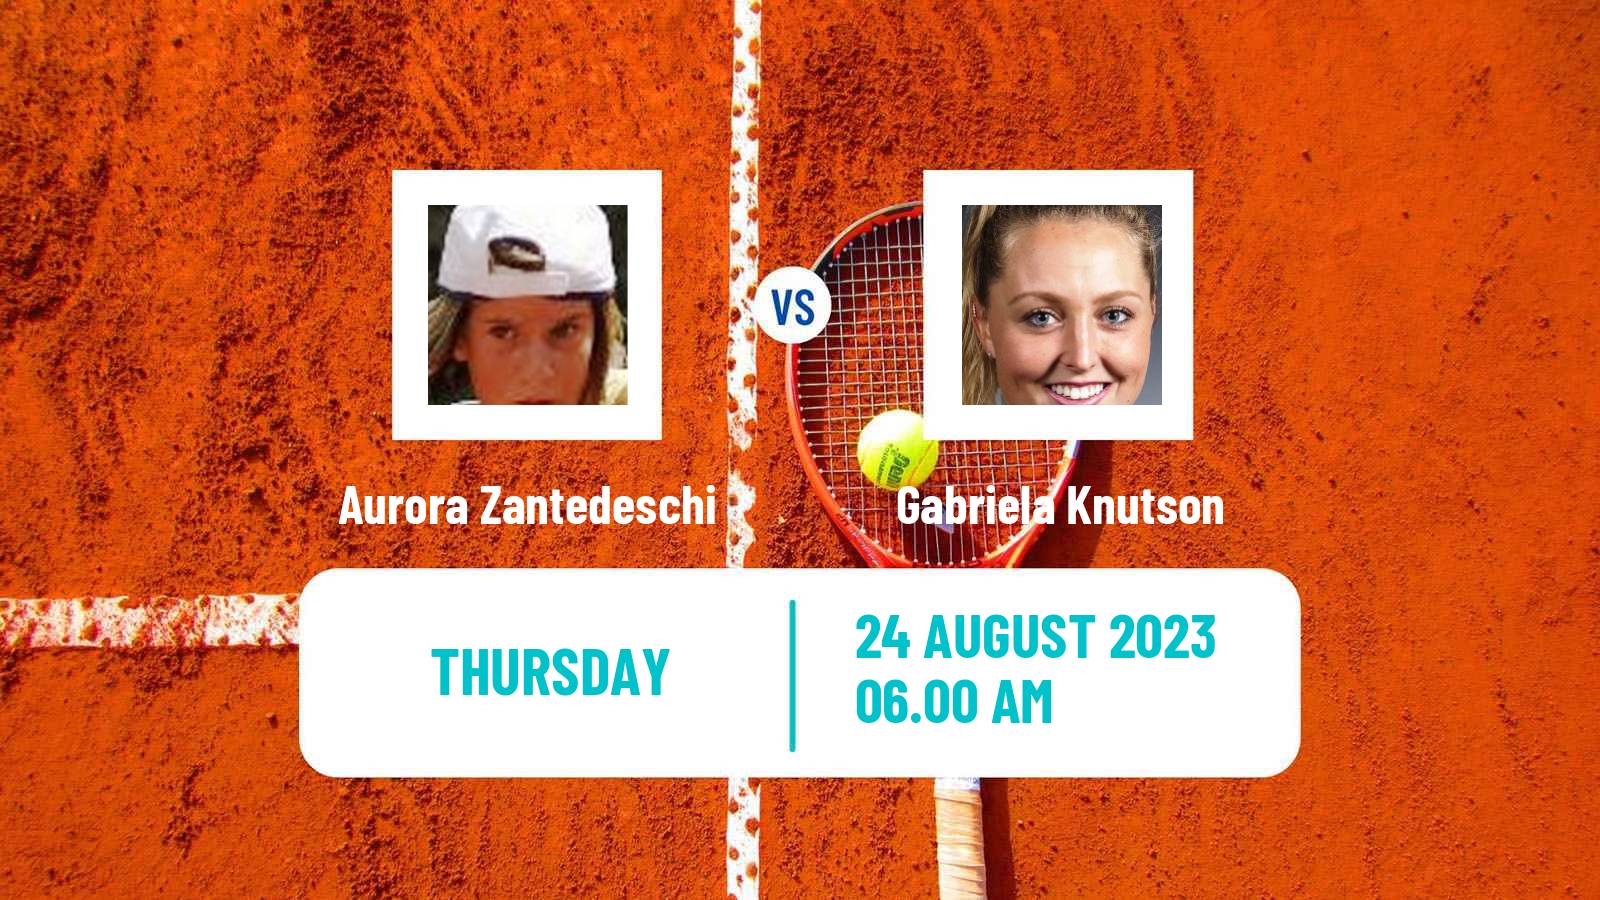 Tennis ITF W60 Prerov Women Aurora Zantedeschi - Gabriela Knutson